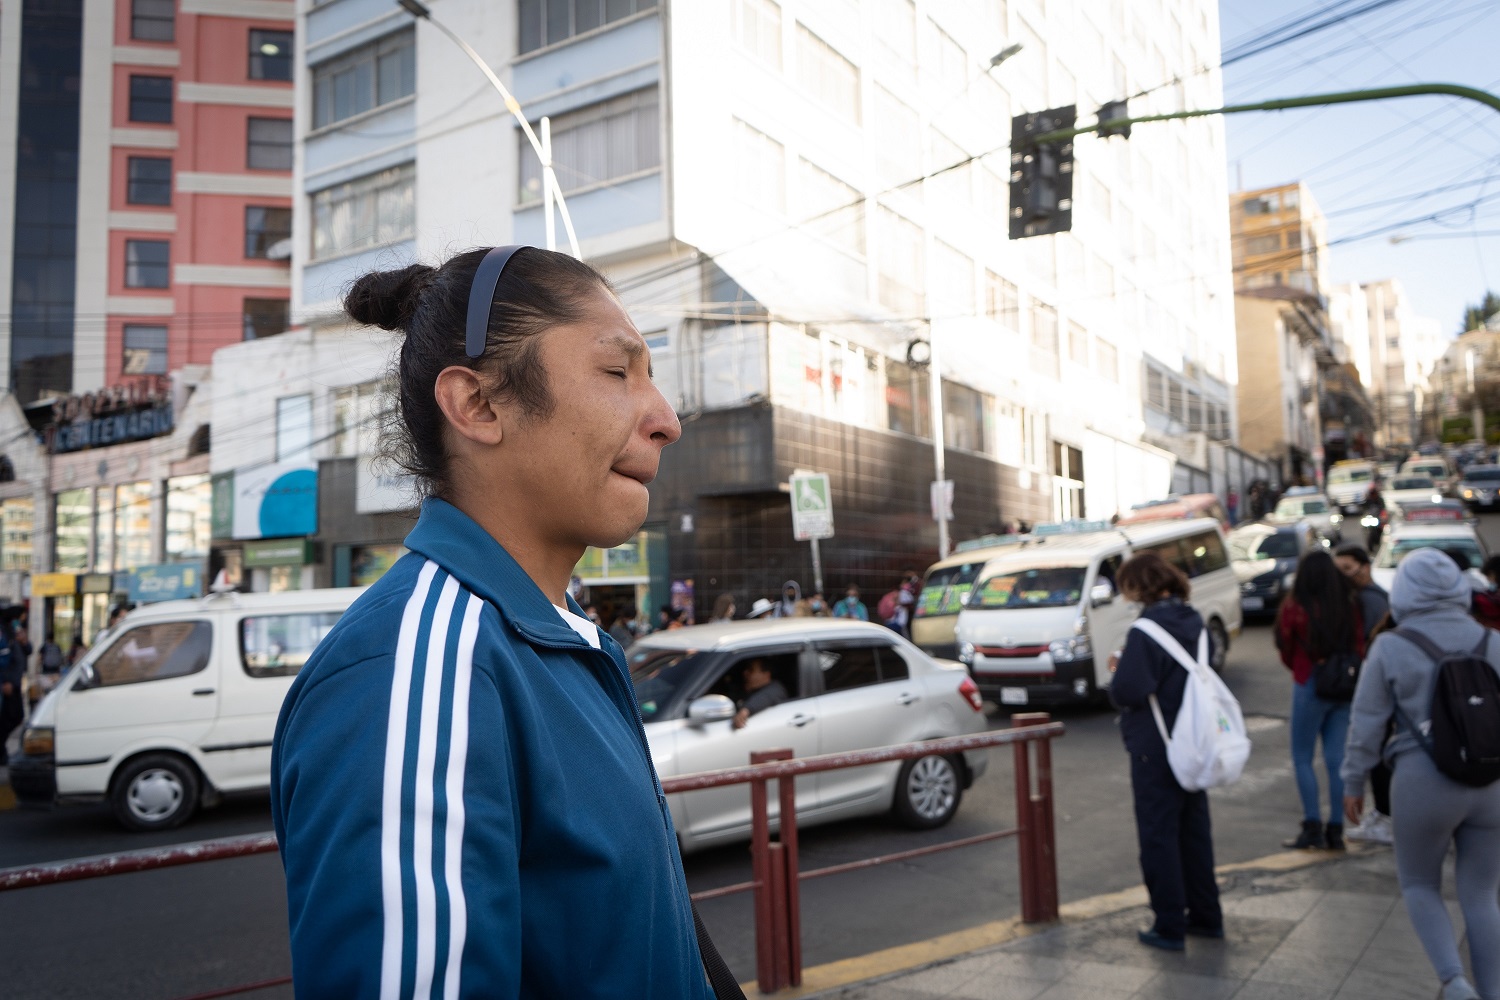 José Fernando retorna al lugar de la protesta en La Paz donde un policía le disparó una granada de gas lo que le produjo la pérdida de su ojo izquierdo | Foto: Javier Mamani